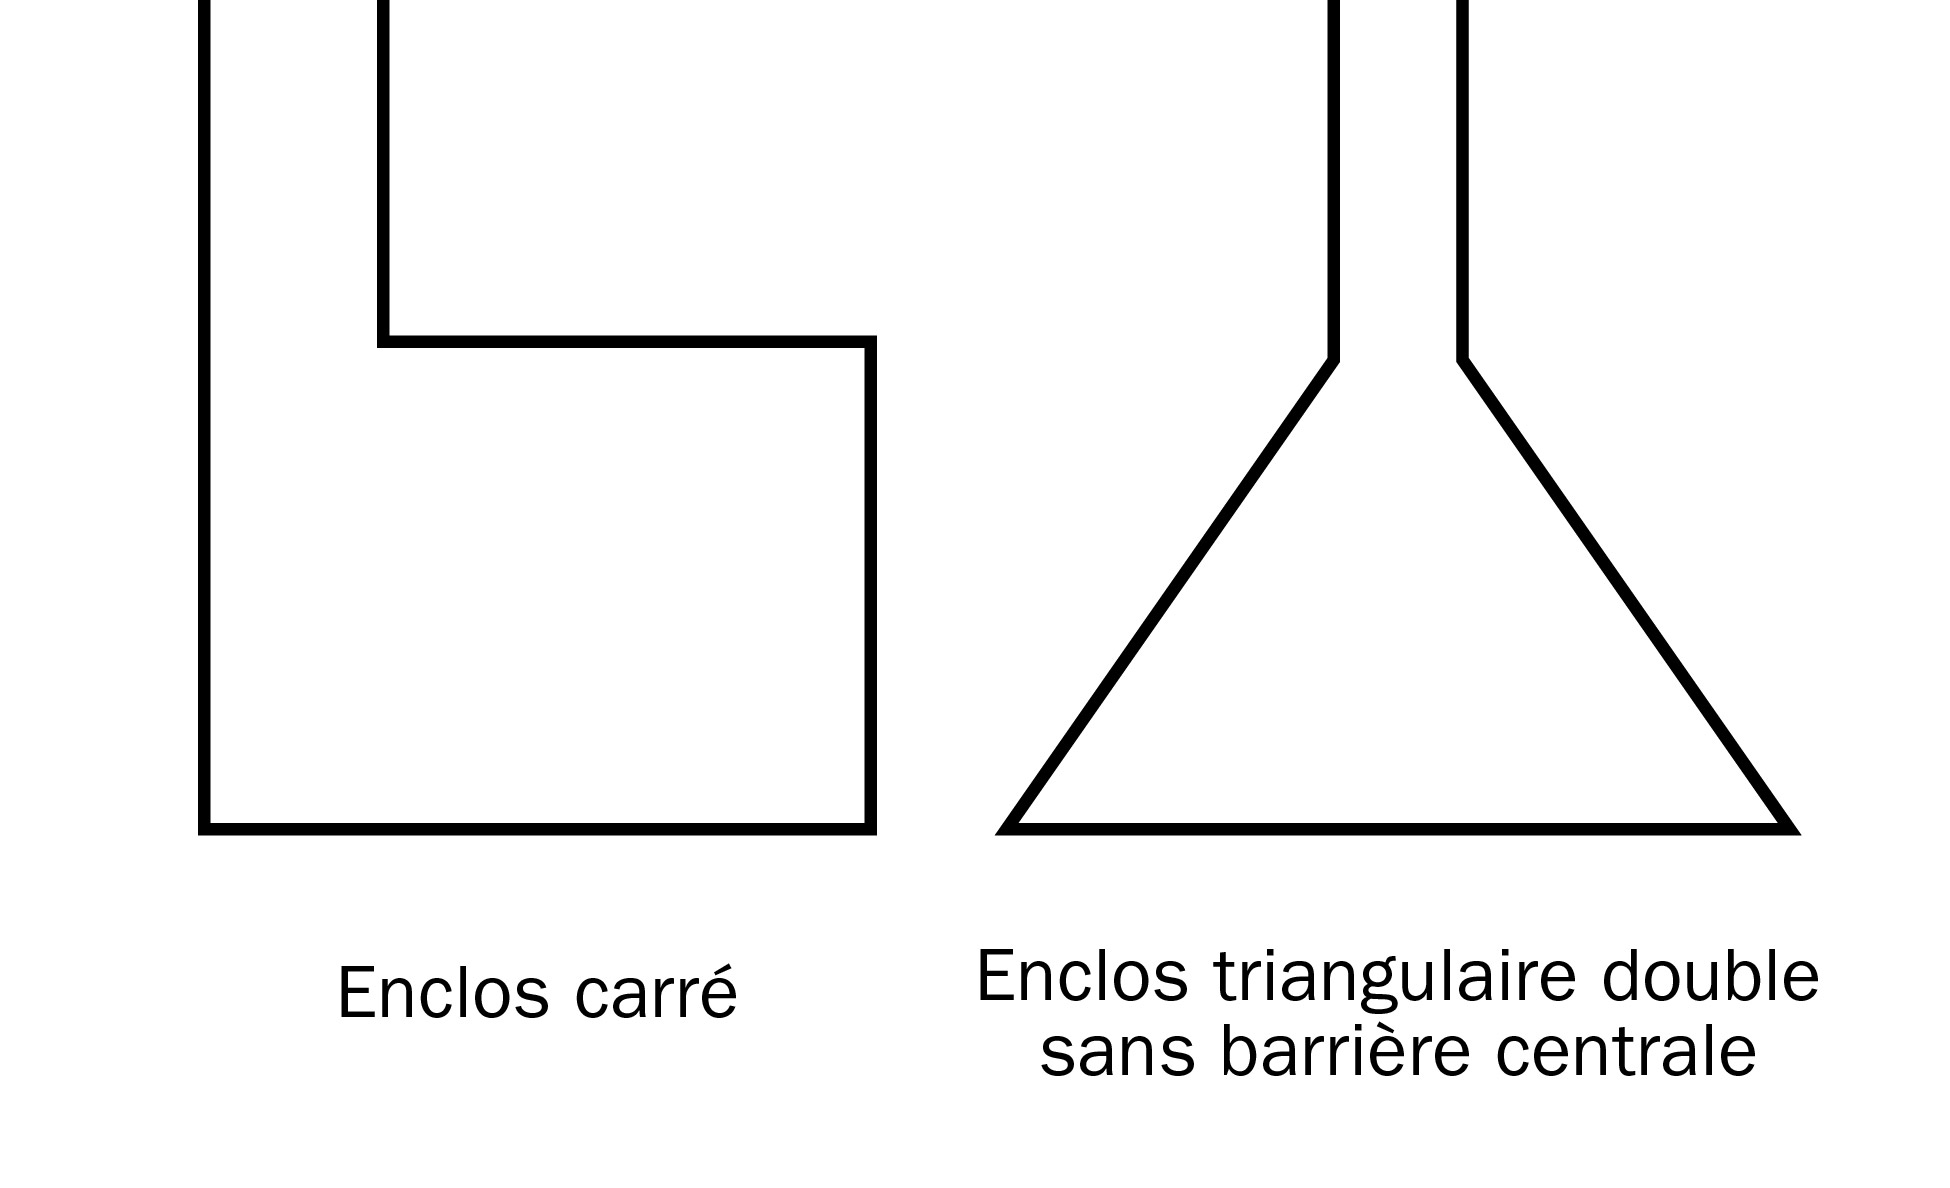 Diagramme illustrant des formes d’enclos non recommandées. Un enclos de forçage carré est illustré à gauche. Il s'agit d’un grand carré avec une petite ouverture en haut à gauche. Un enclos de forçage triangulaire sans barrière centrale - très grand triangle avec une petite ouverture à son sommet - est illustré à droite.